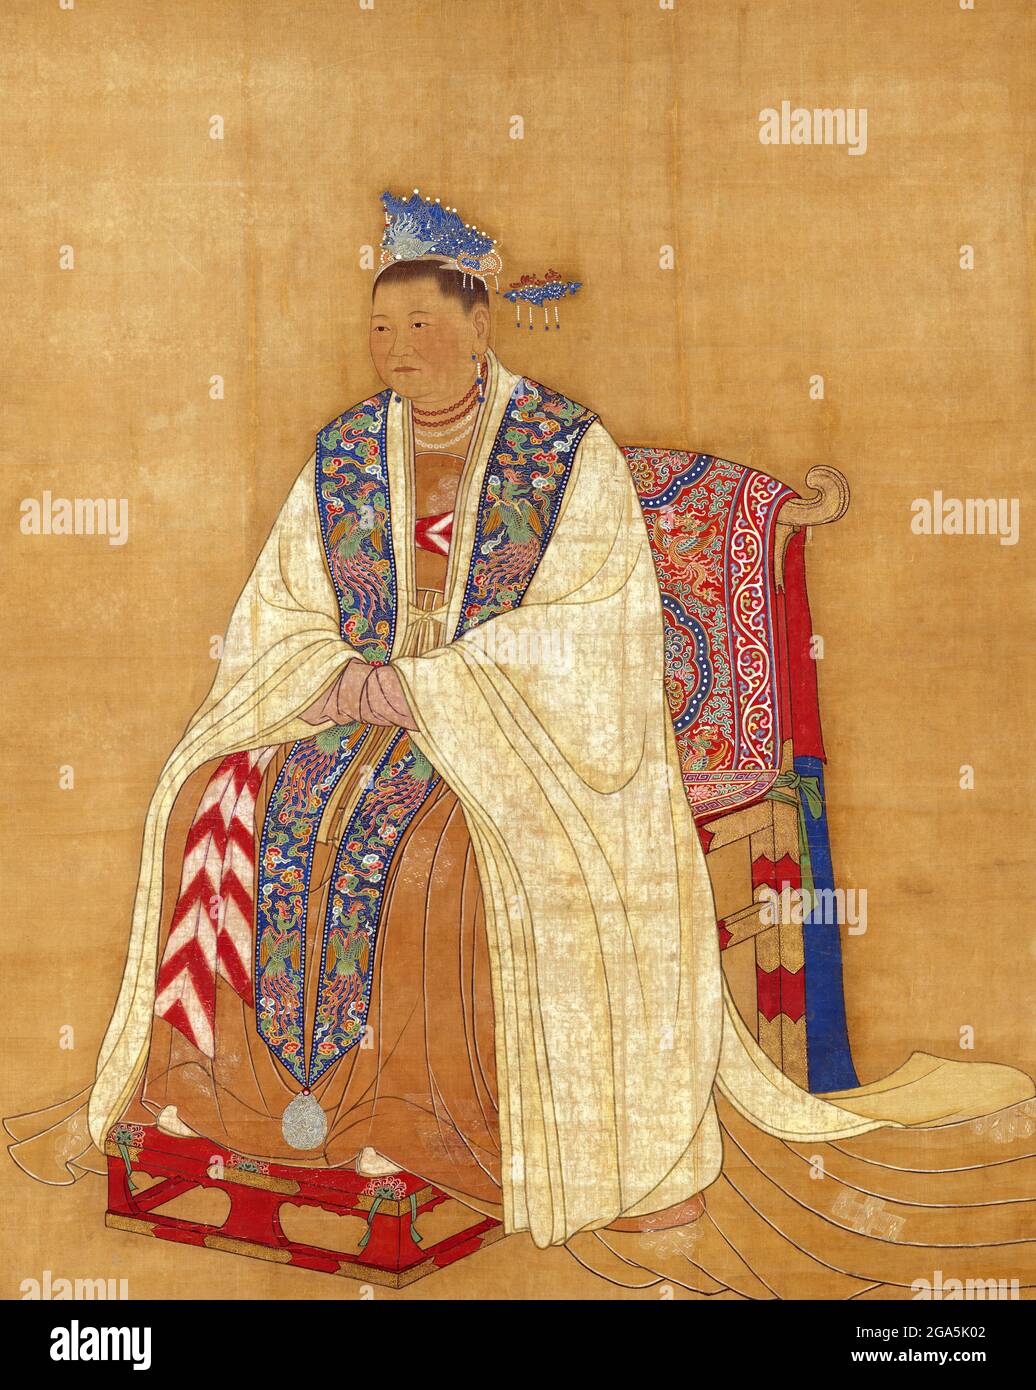 China: Kaiserin Dowager Zhaoxian (902. - 17. Juli 961), Mutter der ersten beiden Song-Kaiser Taizu und Taizong. Hängende Schriftrolle, Song-Dynastie (960-1279). Lady Du, formell als Zhaoxian bekannt, war eine Kaiserin der Song-Dynastie. Sie war die Frau von General Zhao Hongyin und Mutter der ersten beiden Song-Kaiser Taizu und Taizong. Kaiser Taizong beanspruchte die Legitimität des Thrones durch ihren offensichtlichen Willen, der angeblich bei ihrem Tod in einem goldenen Regal versiegelt wurde, obwohl viele Historiker glauben, dass er dies erfunden hat. Stockfoto